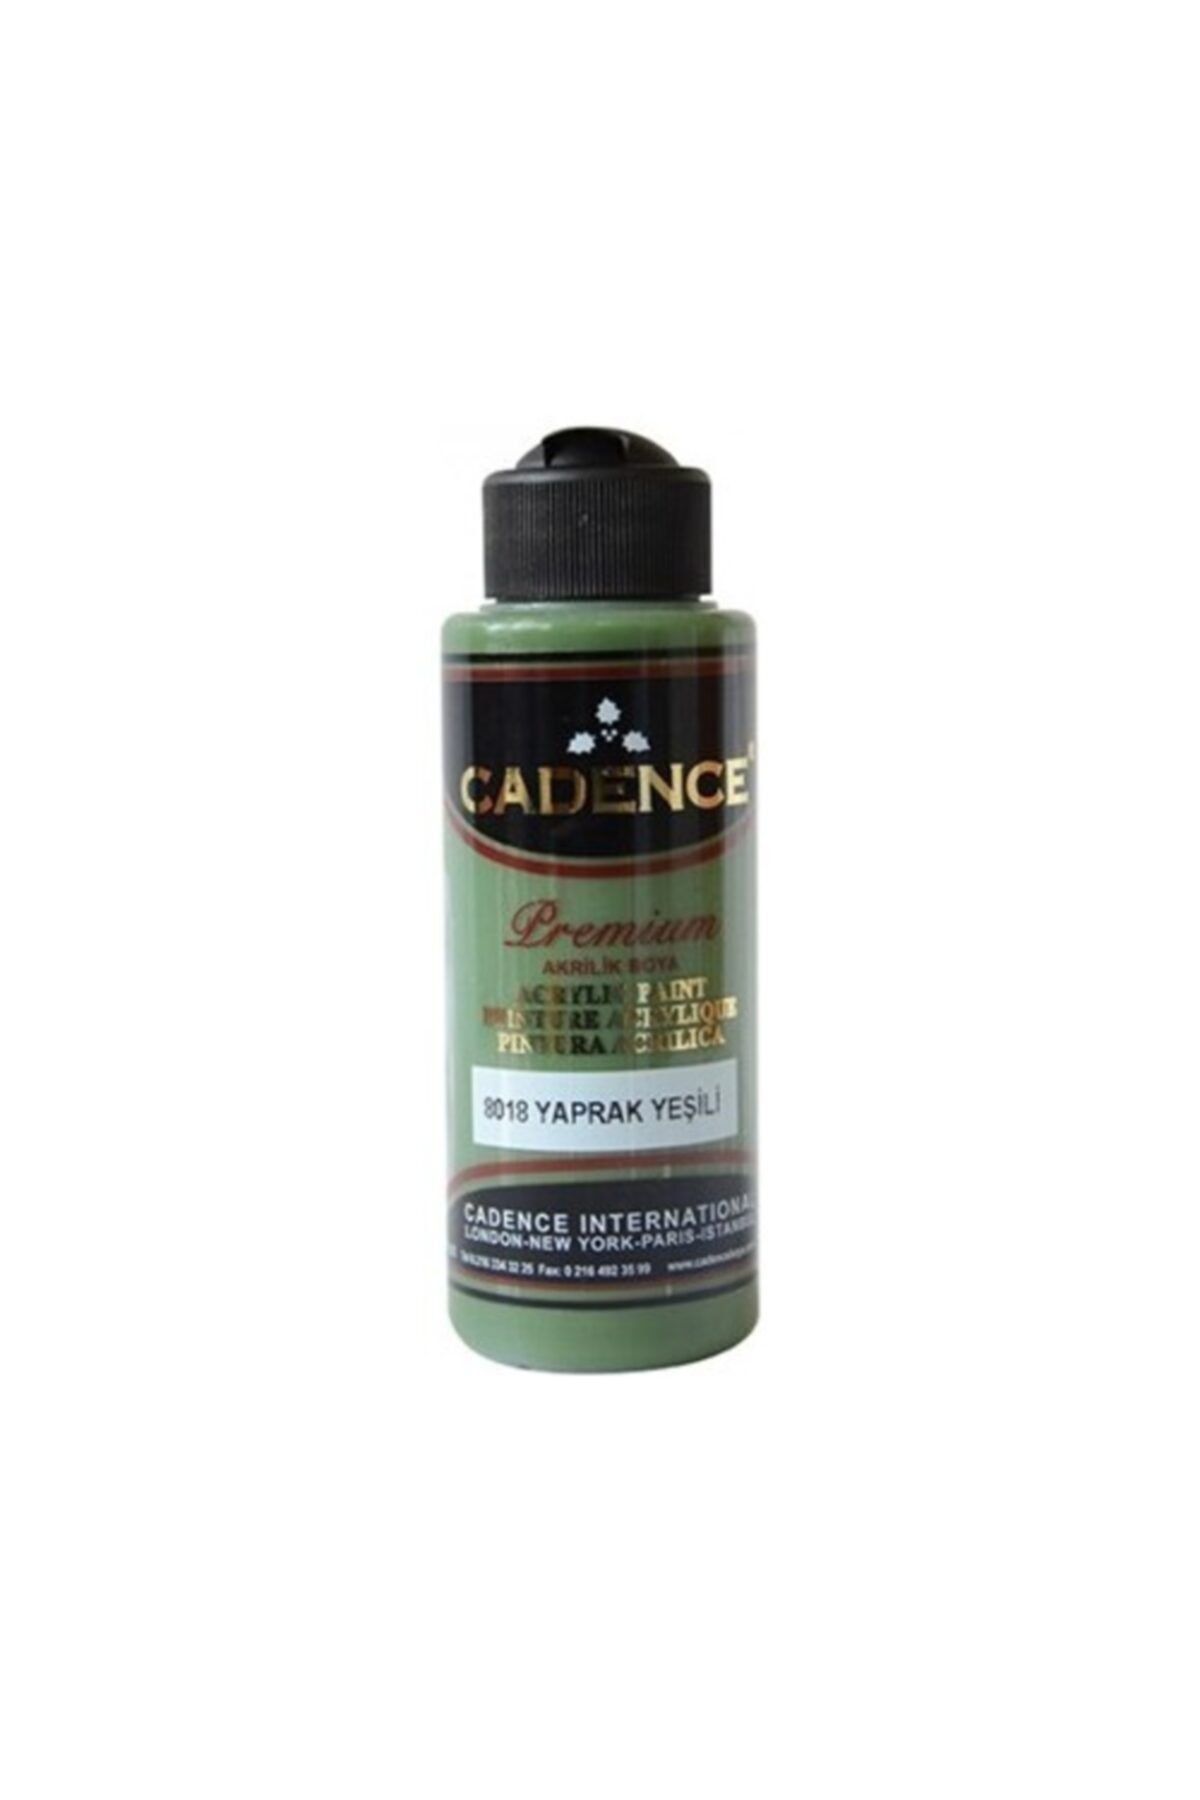 Cadence Premium Akrilik Boya 8018 Yaprak Yeşil 120 ml